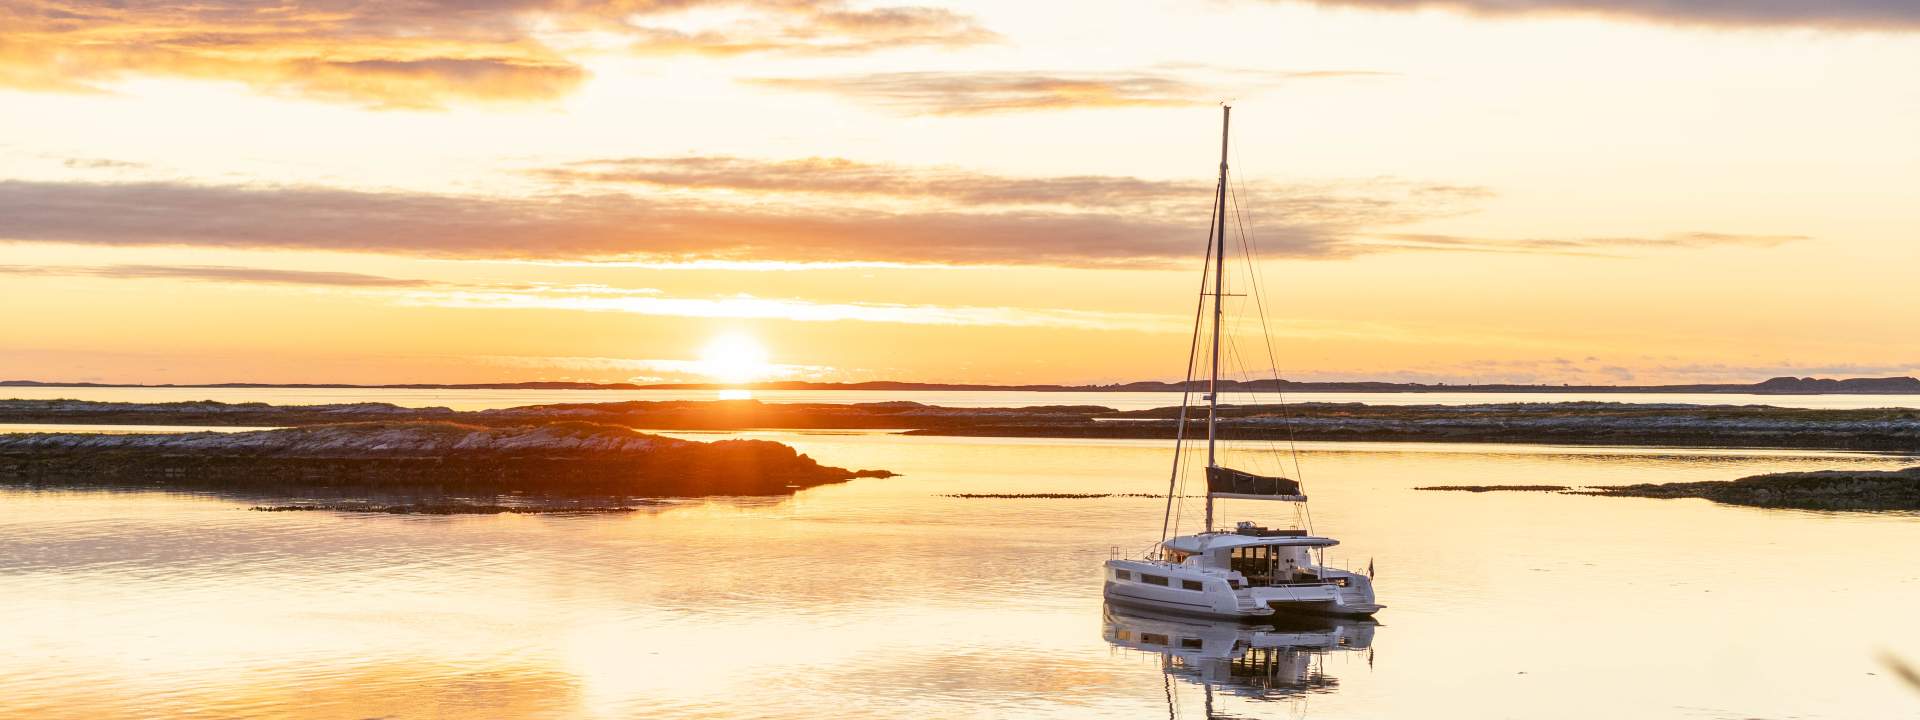 La Norvège : un pays fascinant à découvrir en catamaran